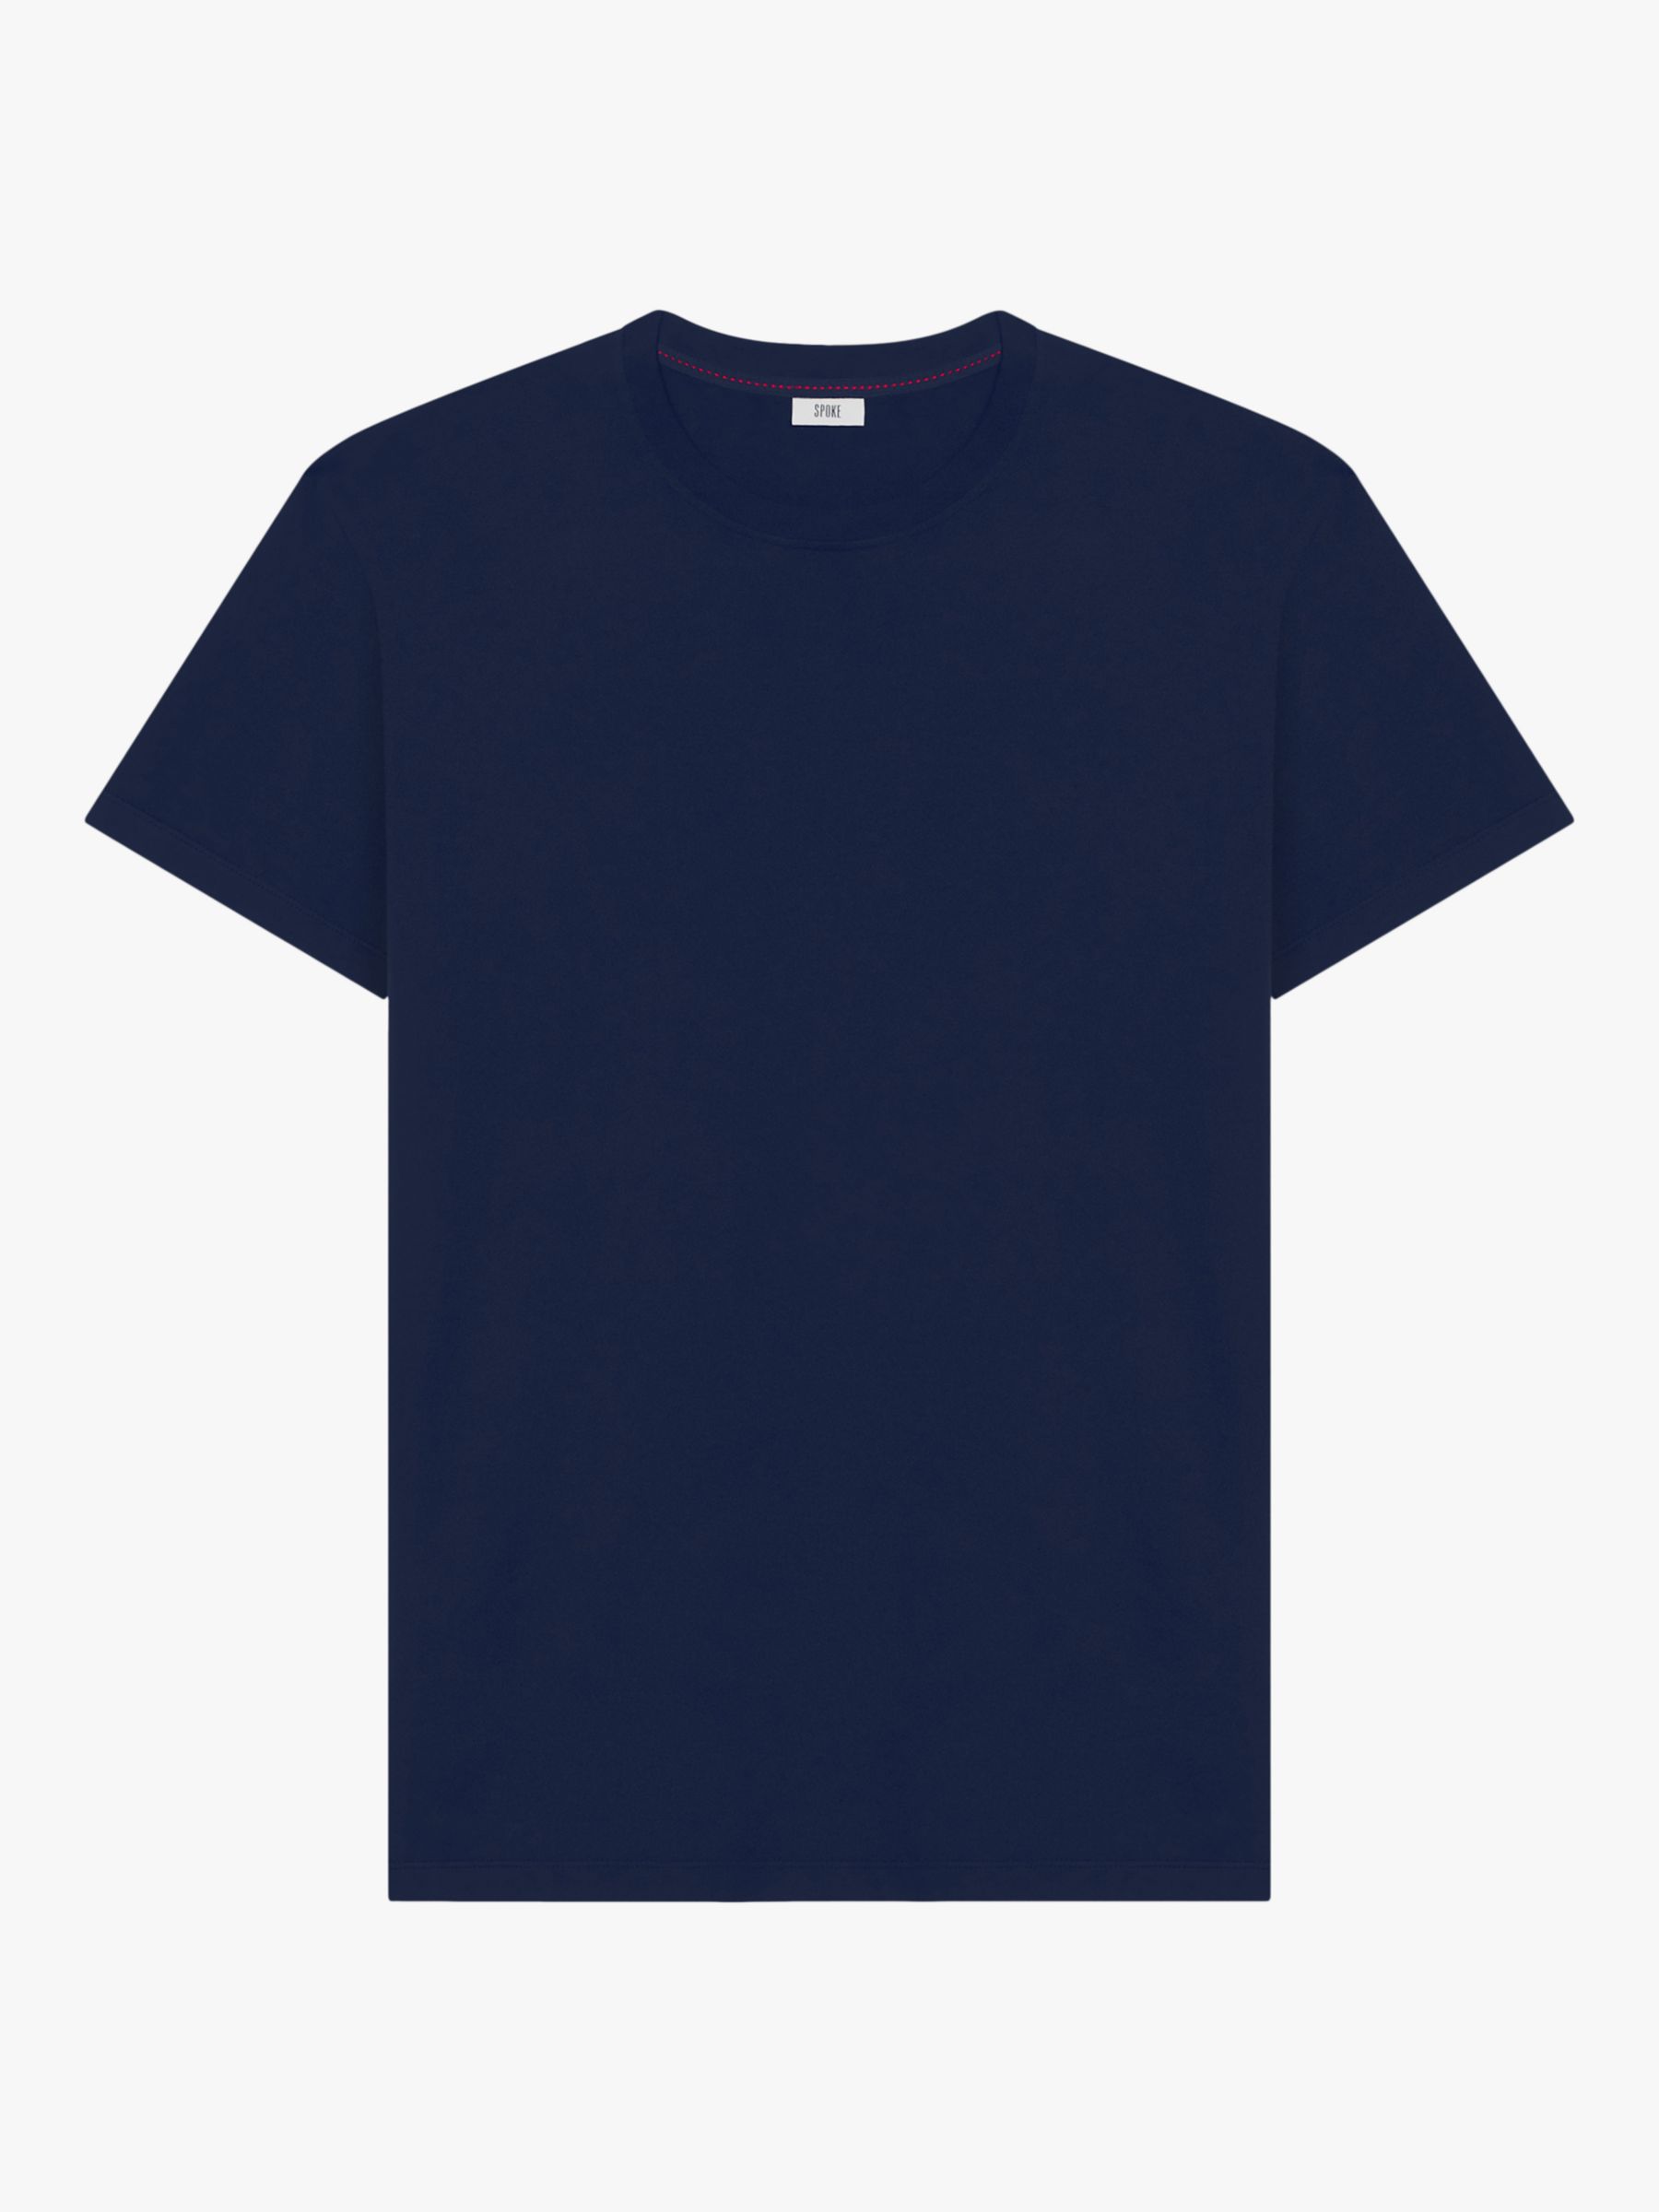 SPOKE Cotton Slim Fit Crew Neck T-Shirt, Navy, S Short